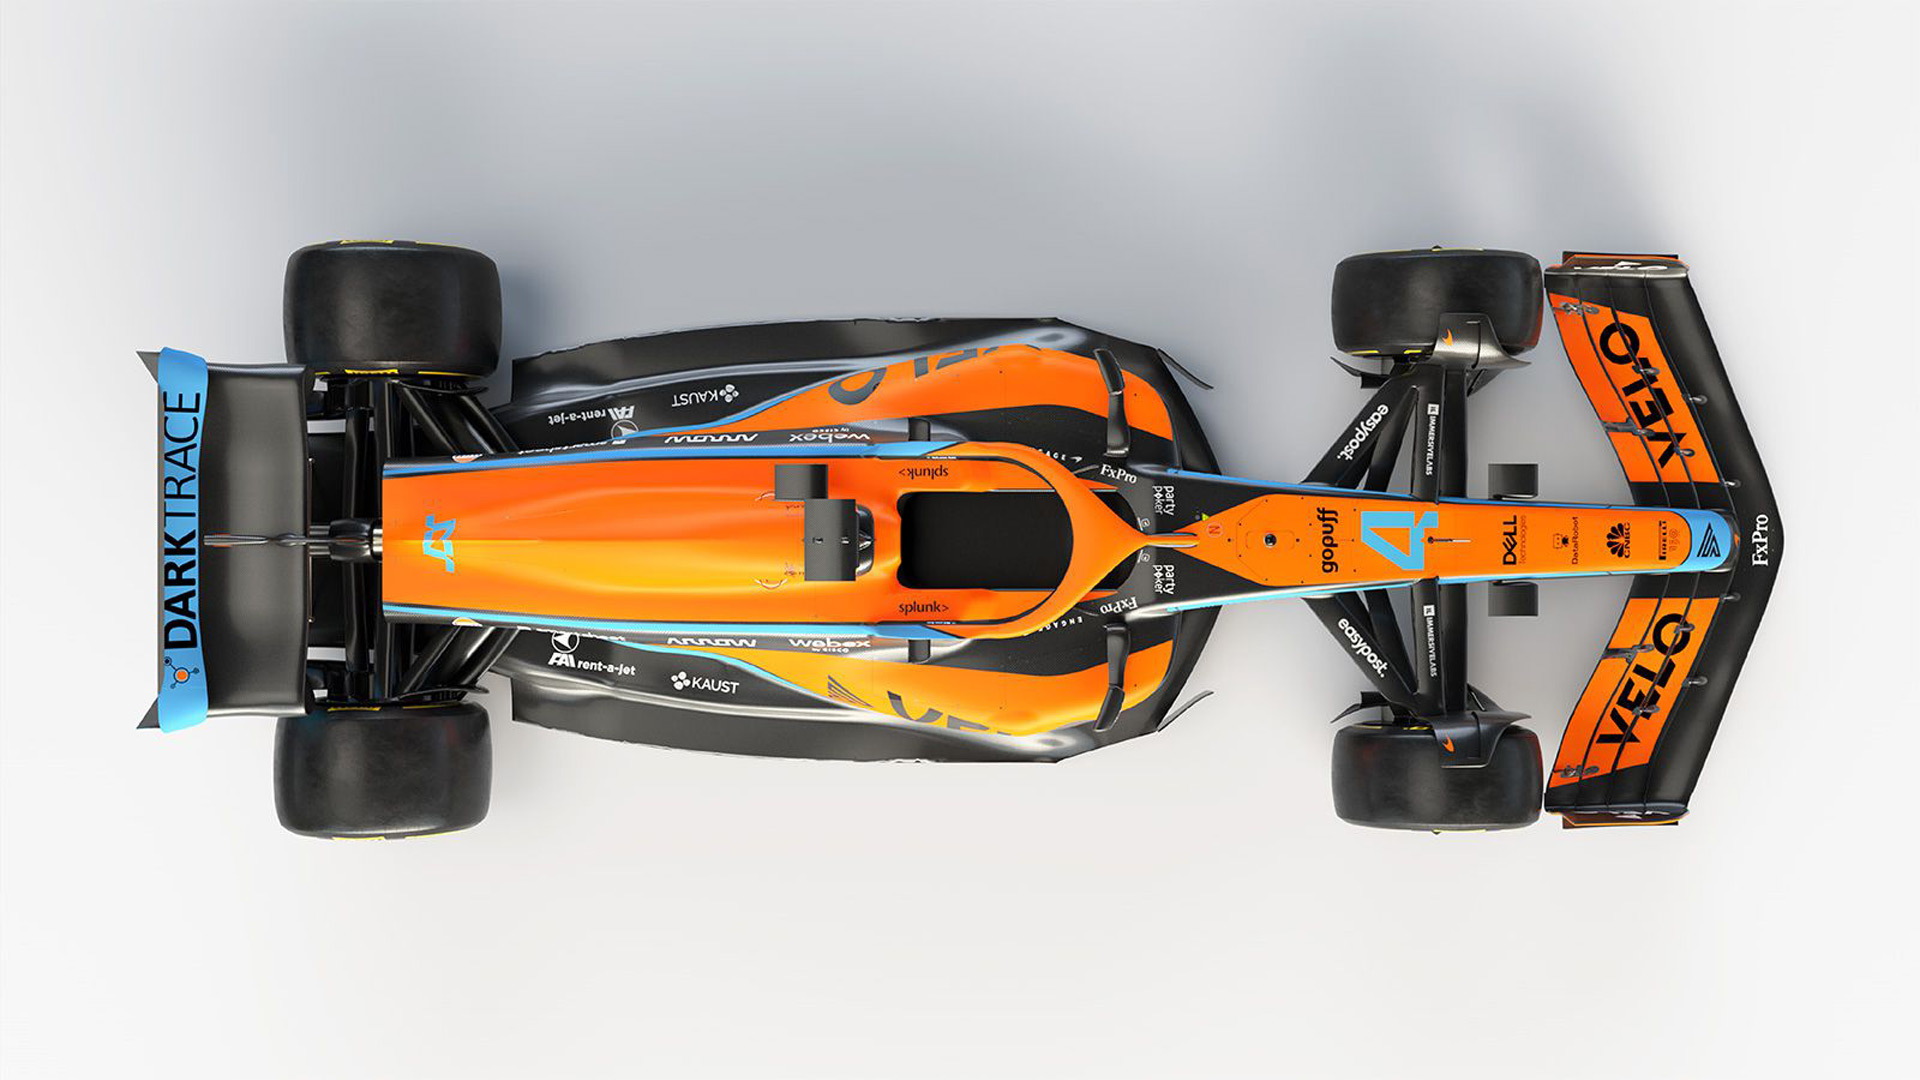 2022 McLaren MCL36 Formula One race car